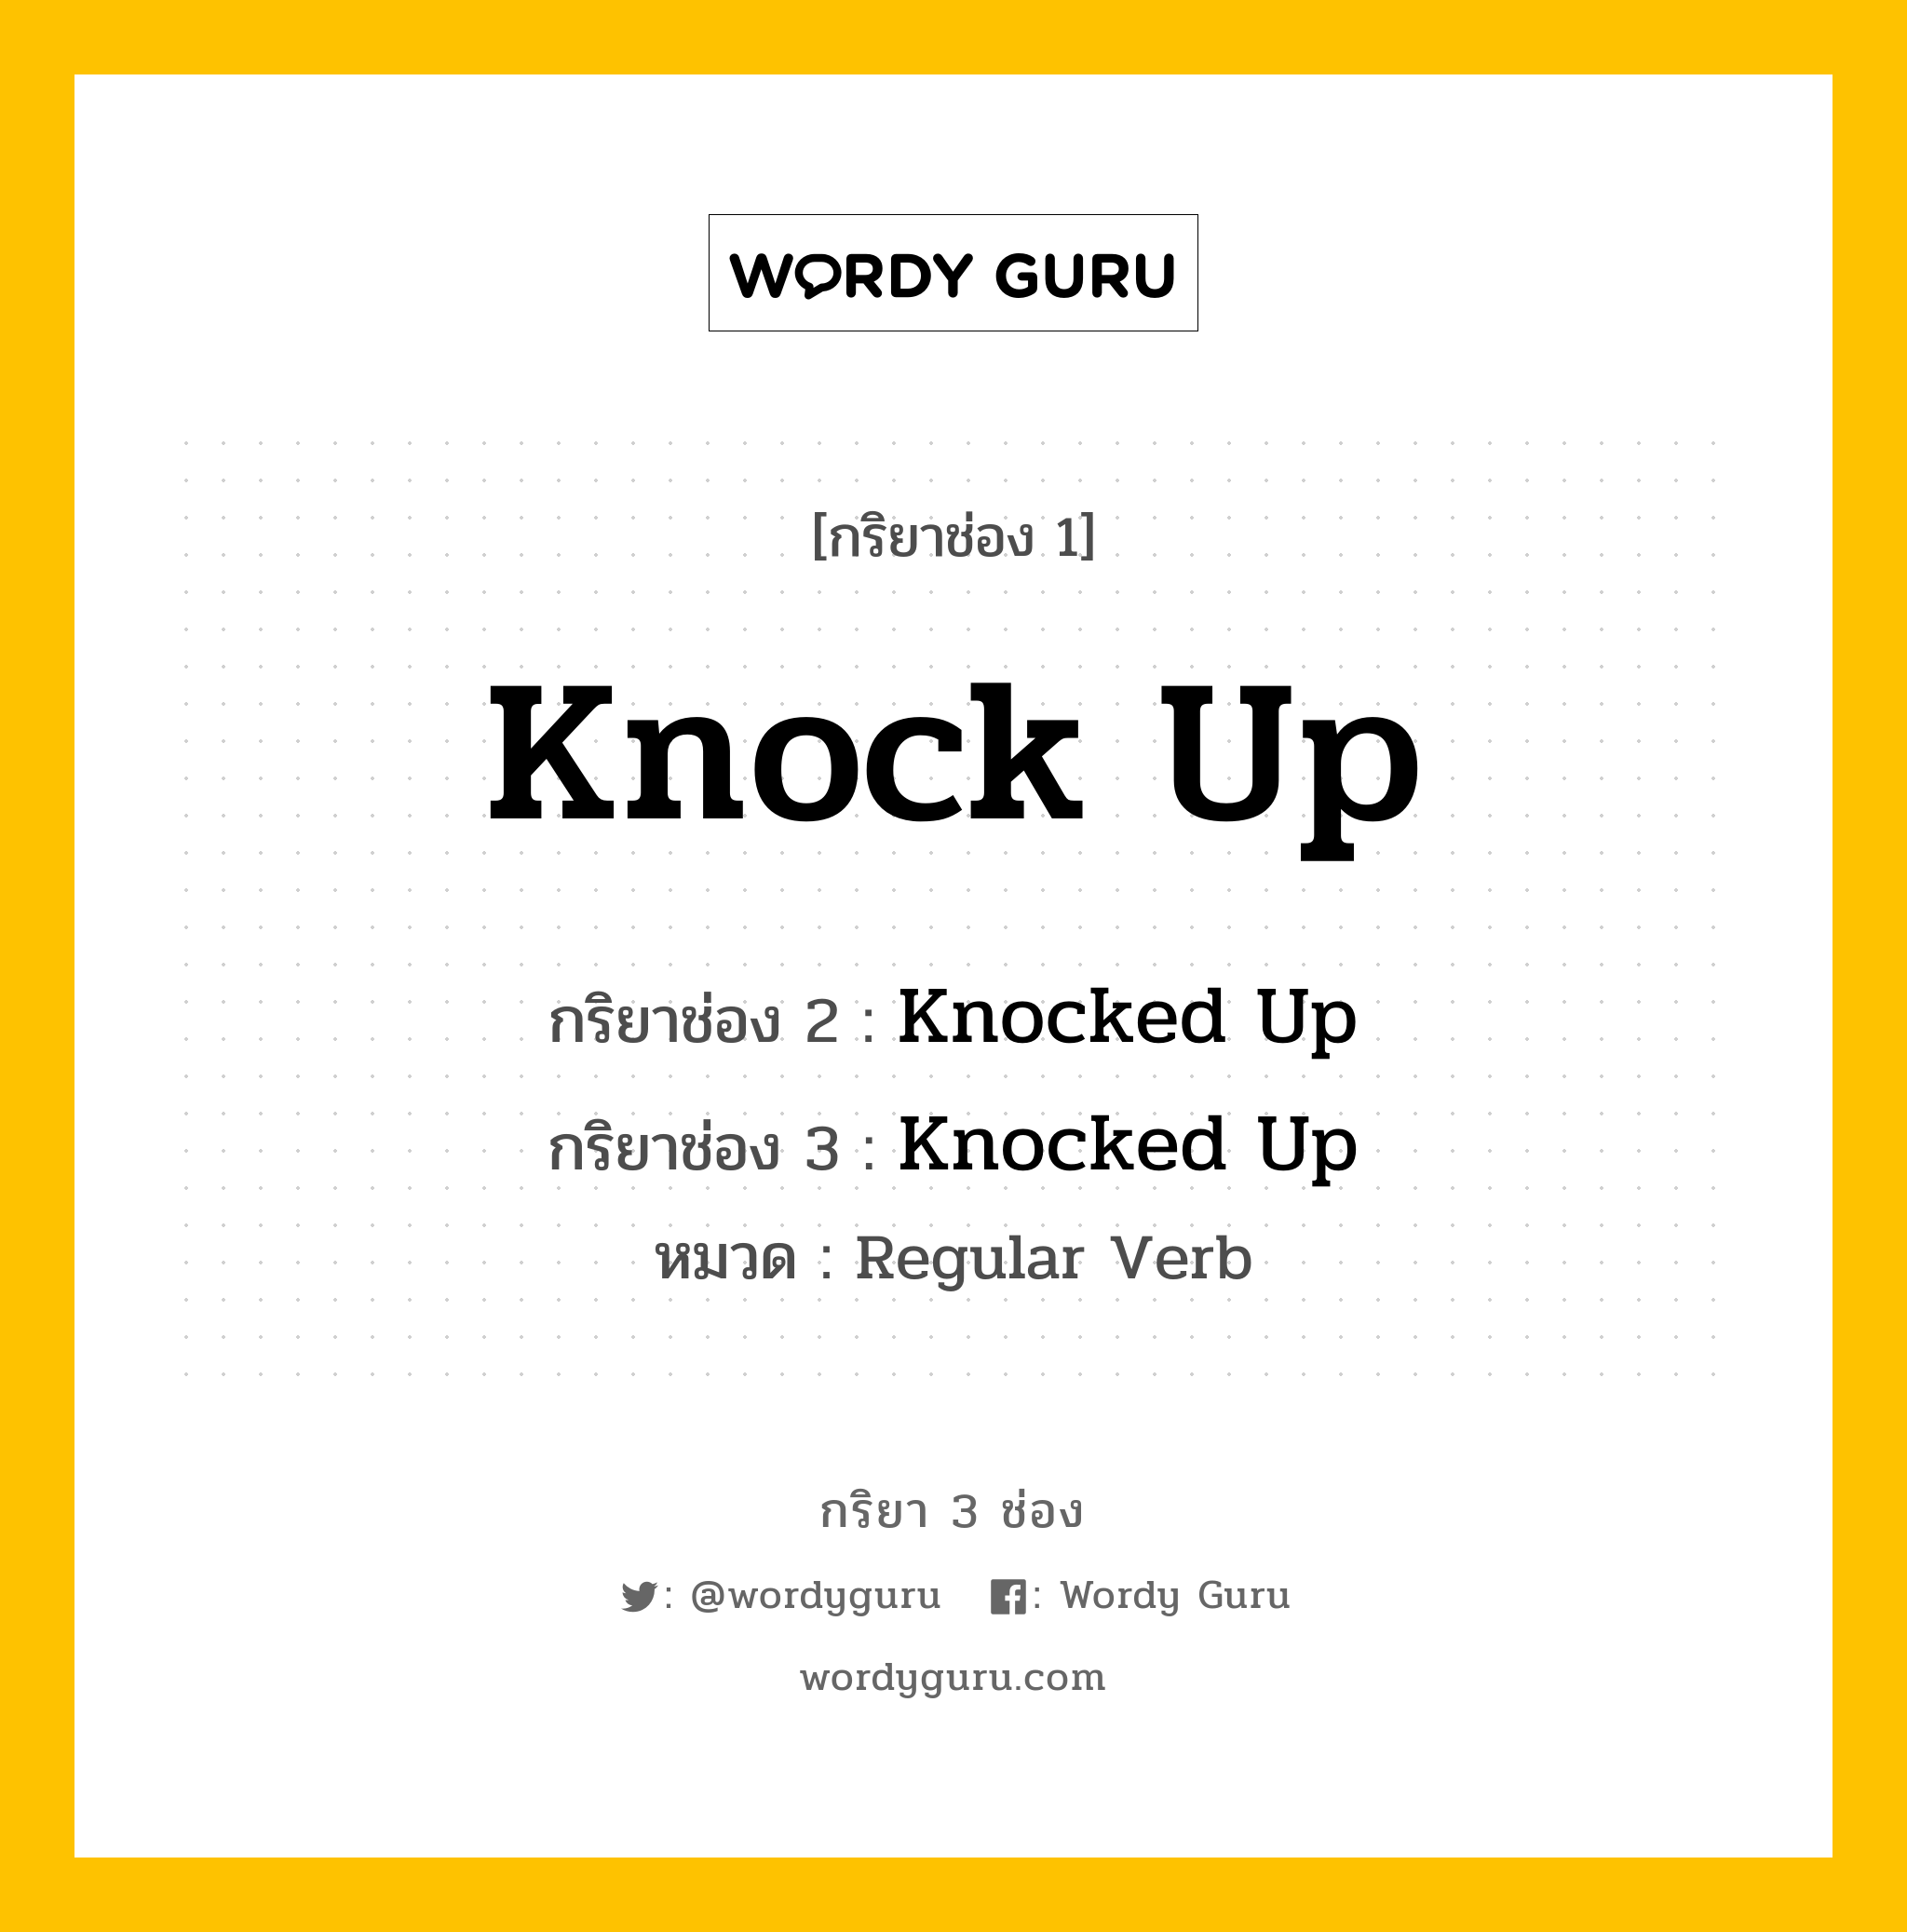 กริยา 3 ช่อง: Knock Up ช่อง 2 Knock Up ช่อง 3 คืออะไร, กริยาช่อง 1 Knock Up กริยาช่อง 2 Knocked Up กริยาช่อง 3 Knocked Up หมวด Regular Verb หมวด Regular Verb